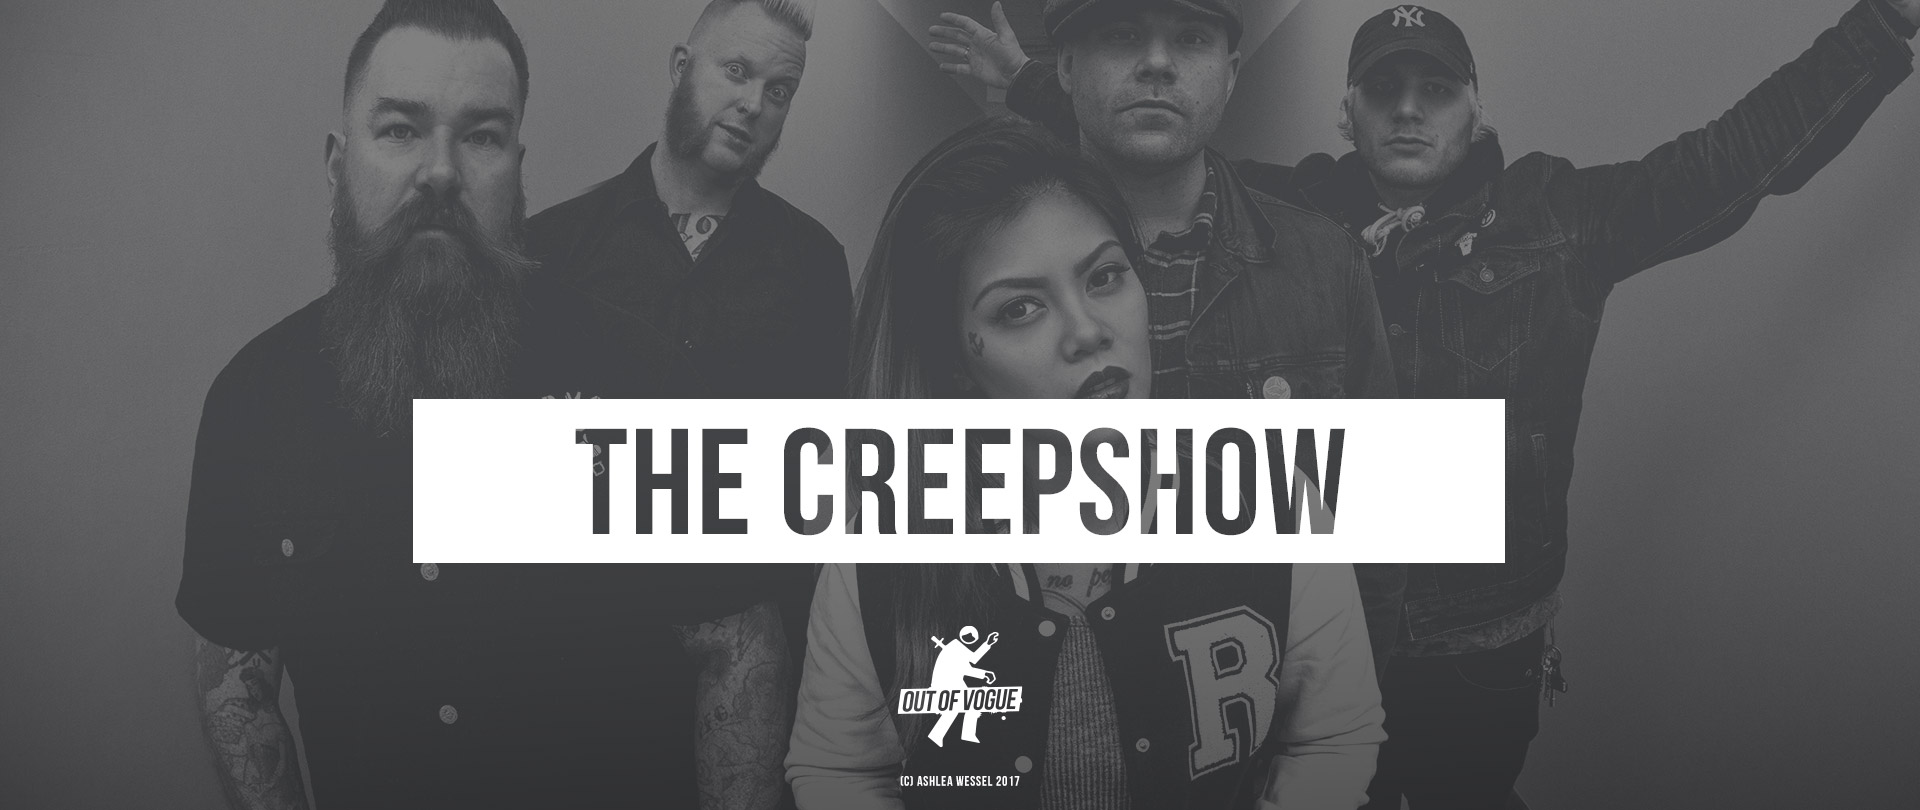 The Creepshow at OUT OF VOGUE SHOP / DE